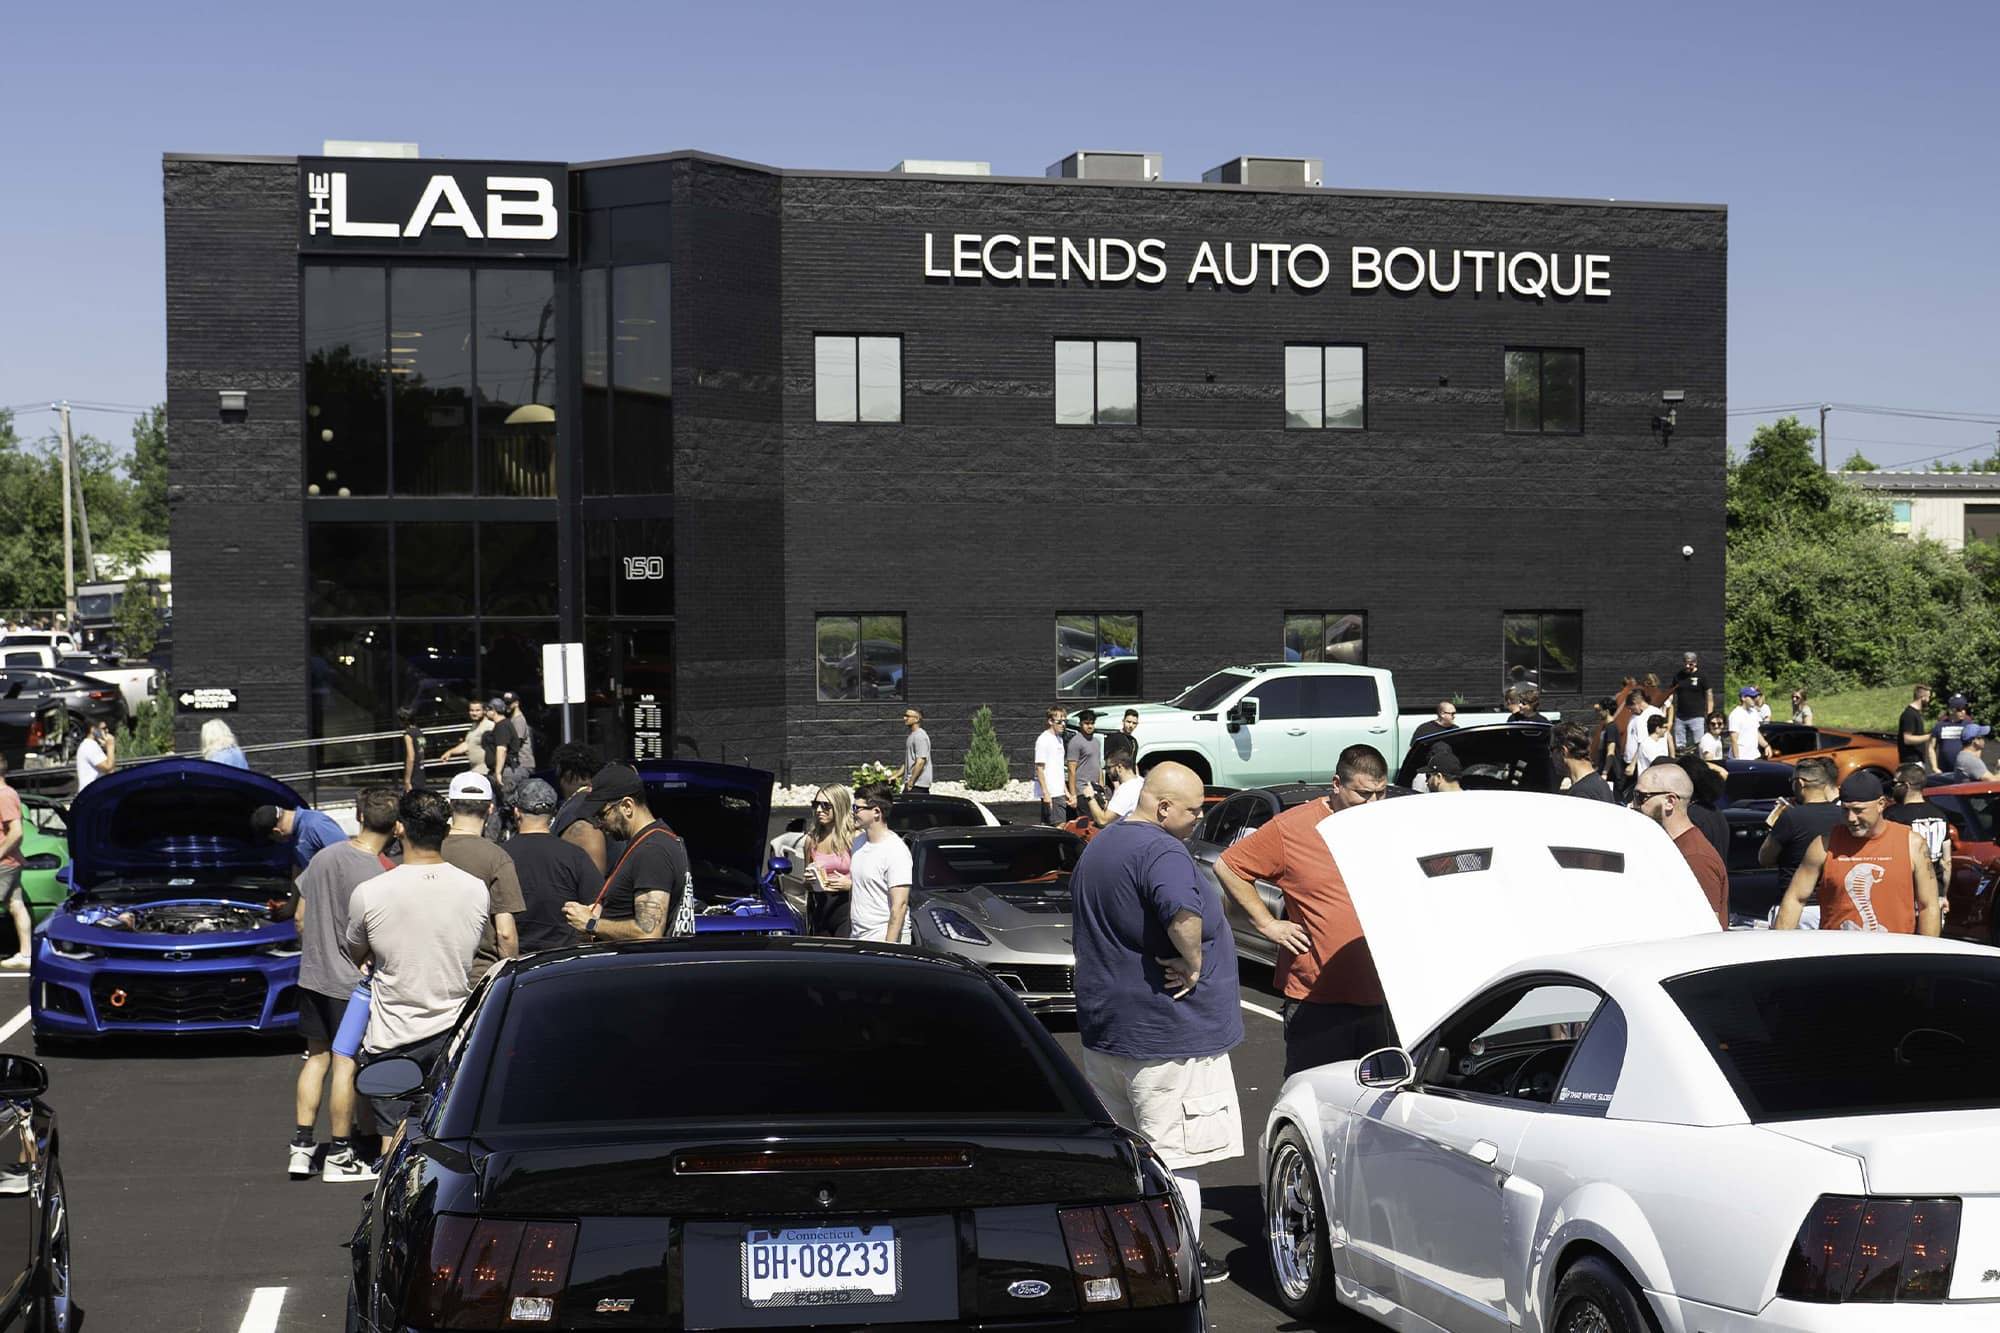 Legends Auto Boutique: Connecticuts Premier Auto Customization Shop – THE  LAB: Legends Auto Boutique